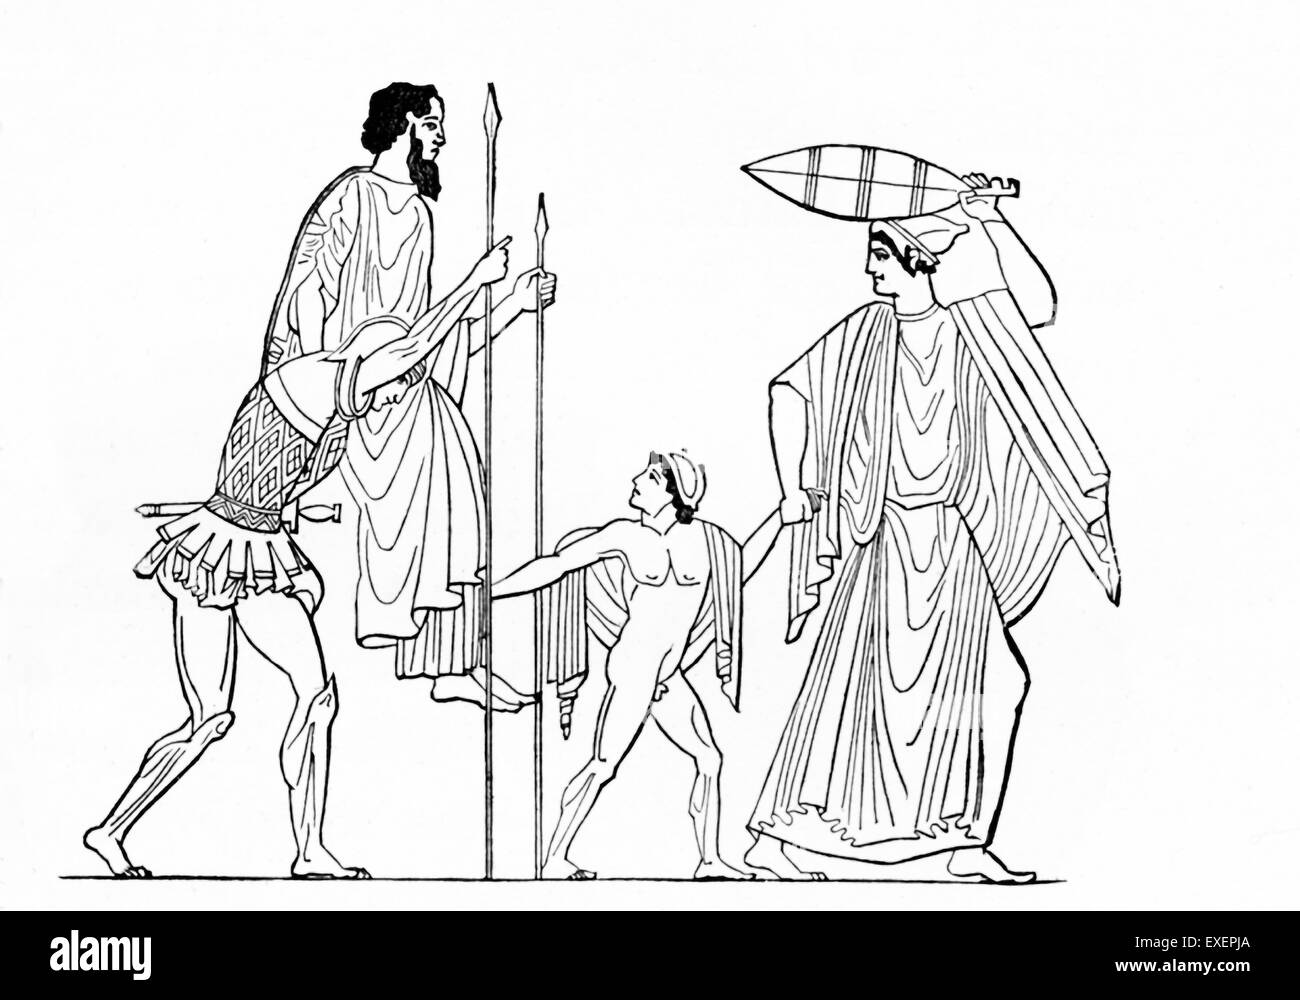 Dans ce dessin linéaire basée sur un vase peinture, le héros Troyen Enée est vu quitter Troy, qui est prise par les Grecs dans la guerre de Troie et incendié. Sur ses épaules est son père marin : Blouse, et à l'avant est son fils Ascanius. Énée n'a pas voulu quitter ses camarades, mais les dieux lui a conseillé de partir, lui disant que le destin l'attend. Énée atteint finalement l'Italie et les Romains plus tard l'honorer comme l'ancêtre de Romulus, fondateur de Rome. Banque D'Images